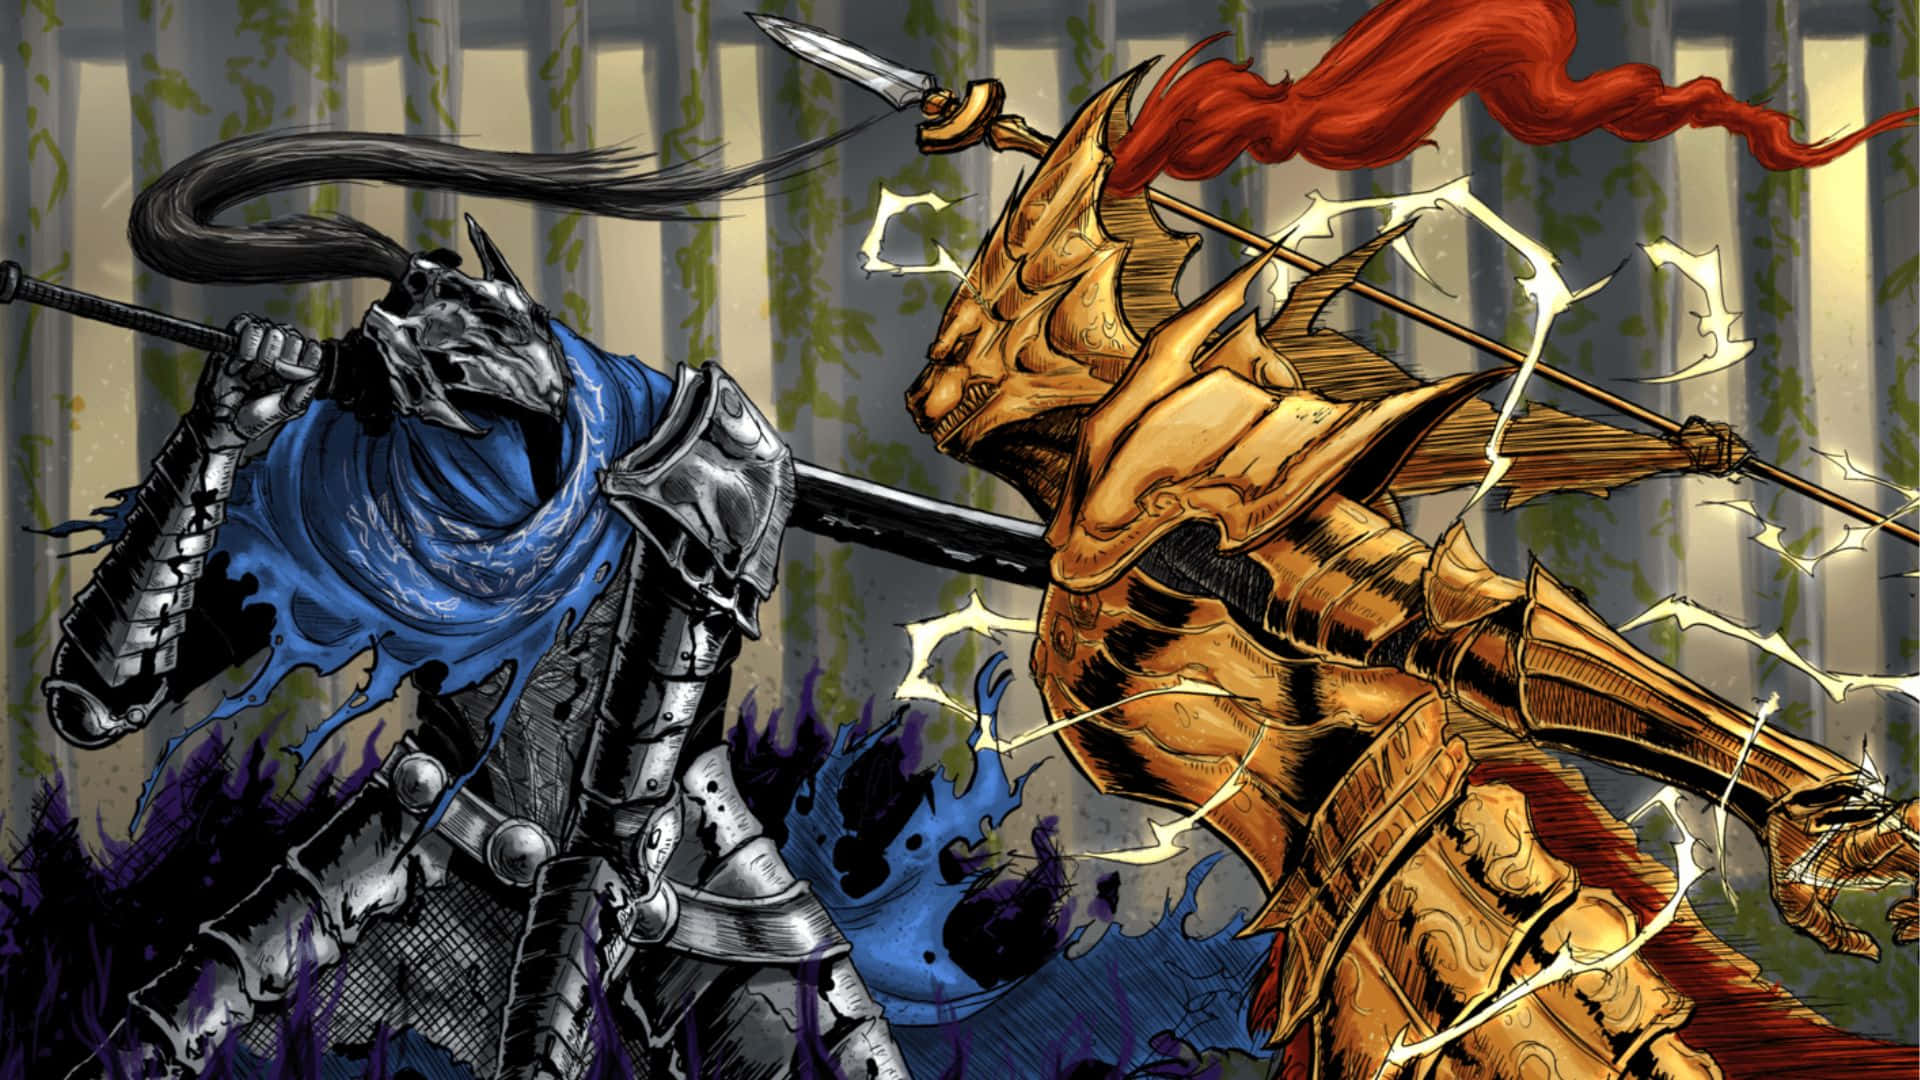 Dragon Slayer Ornstein in Battle Stance Wallpaper